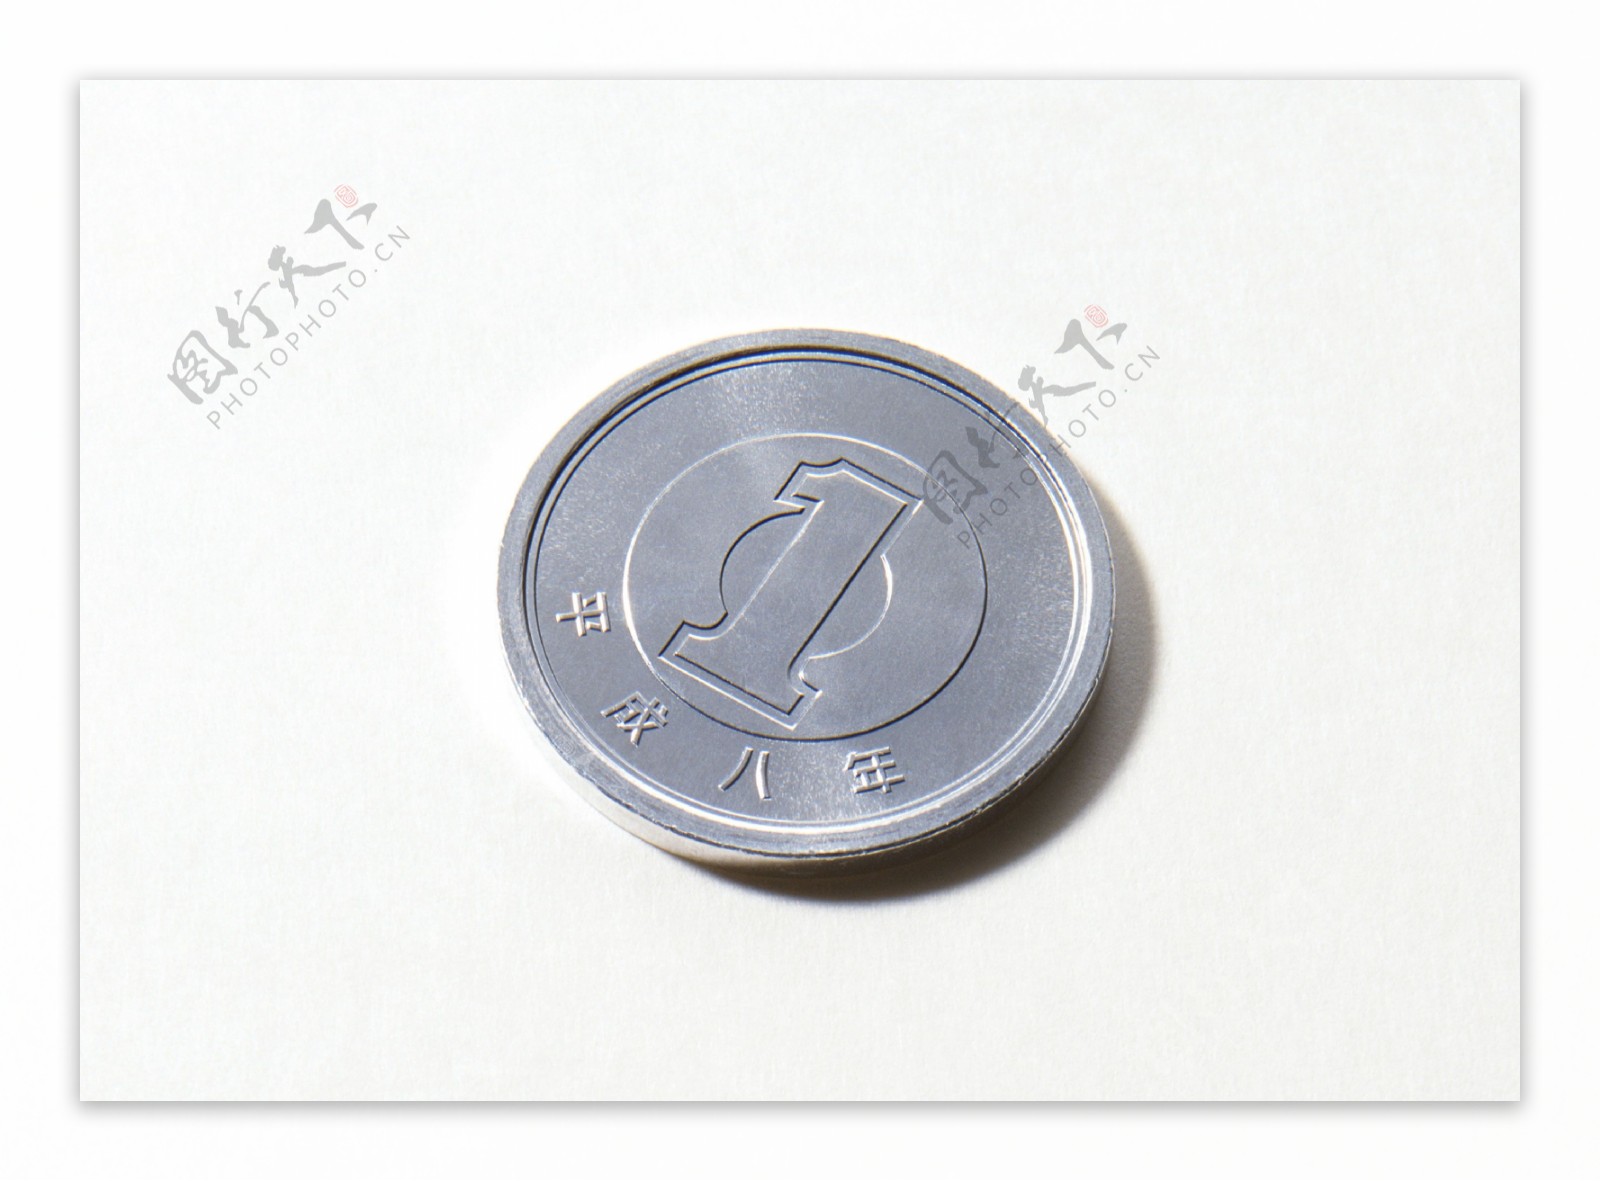 日本硬币特写日本货币欣赏